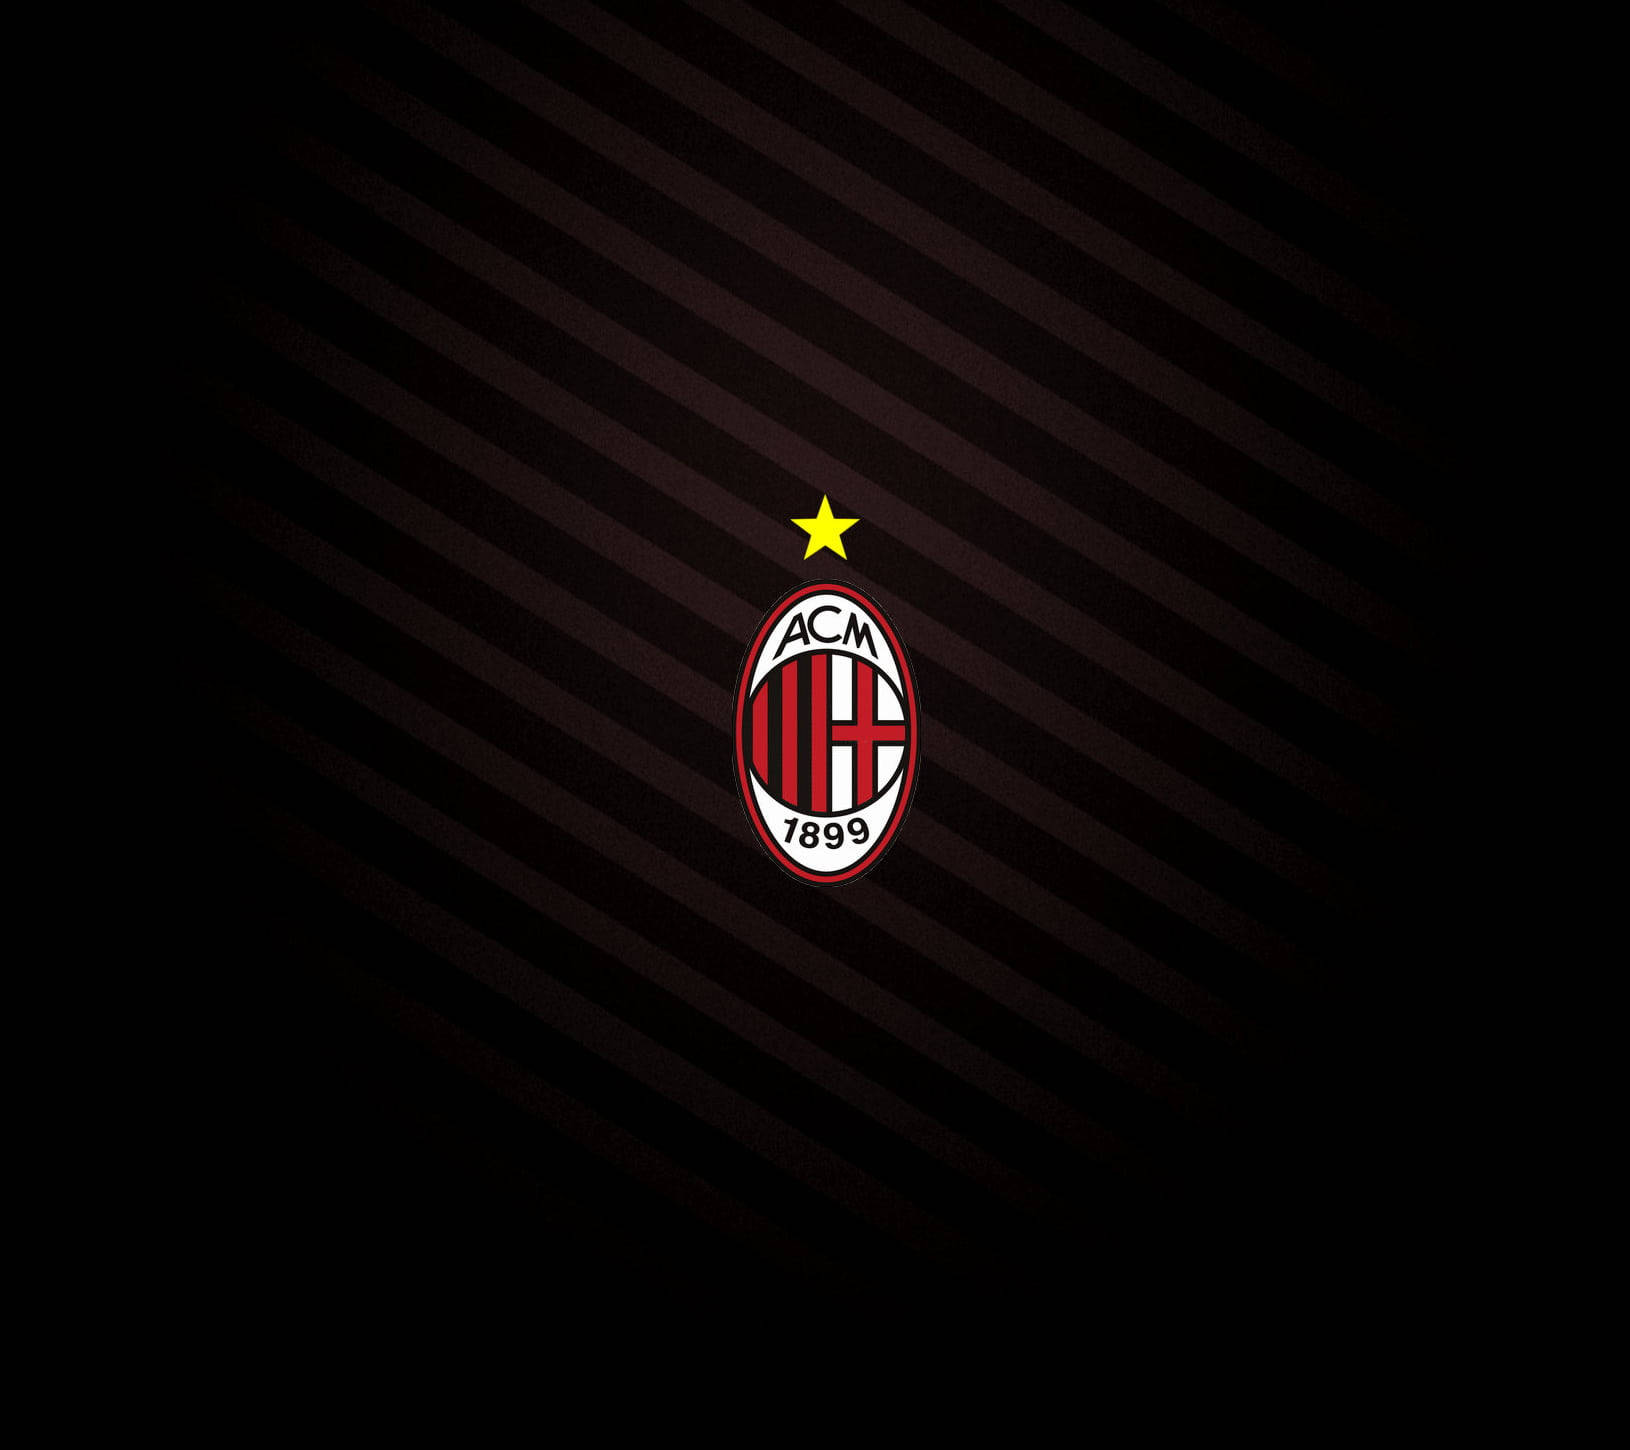 AC Milan Logo With Star Wallpaper